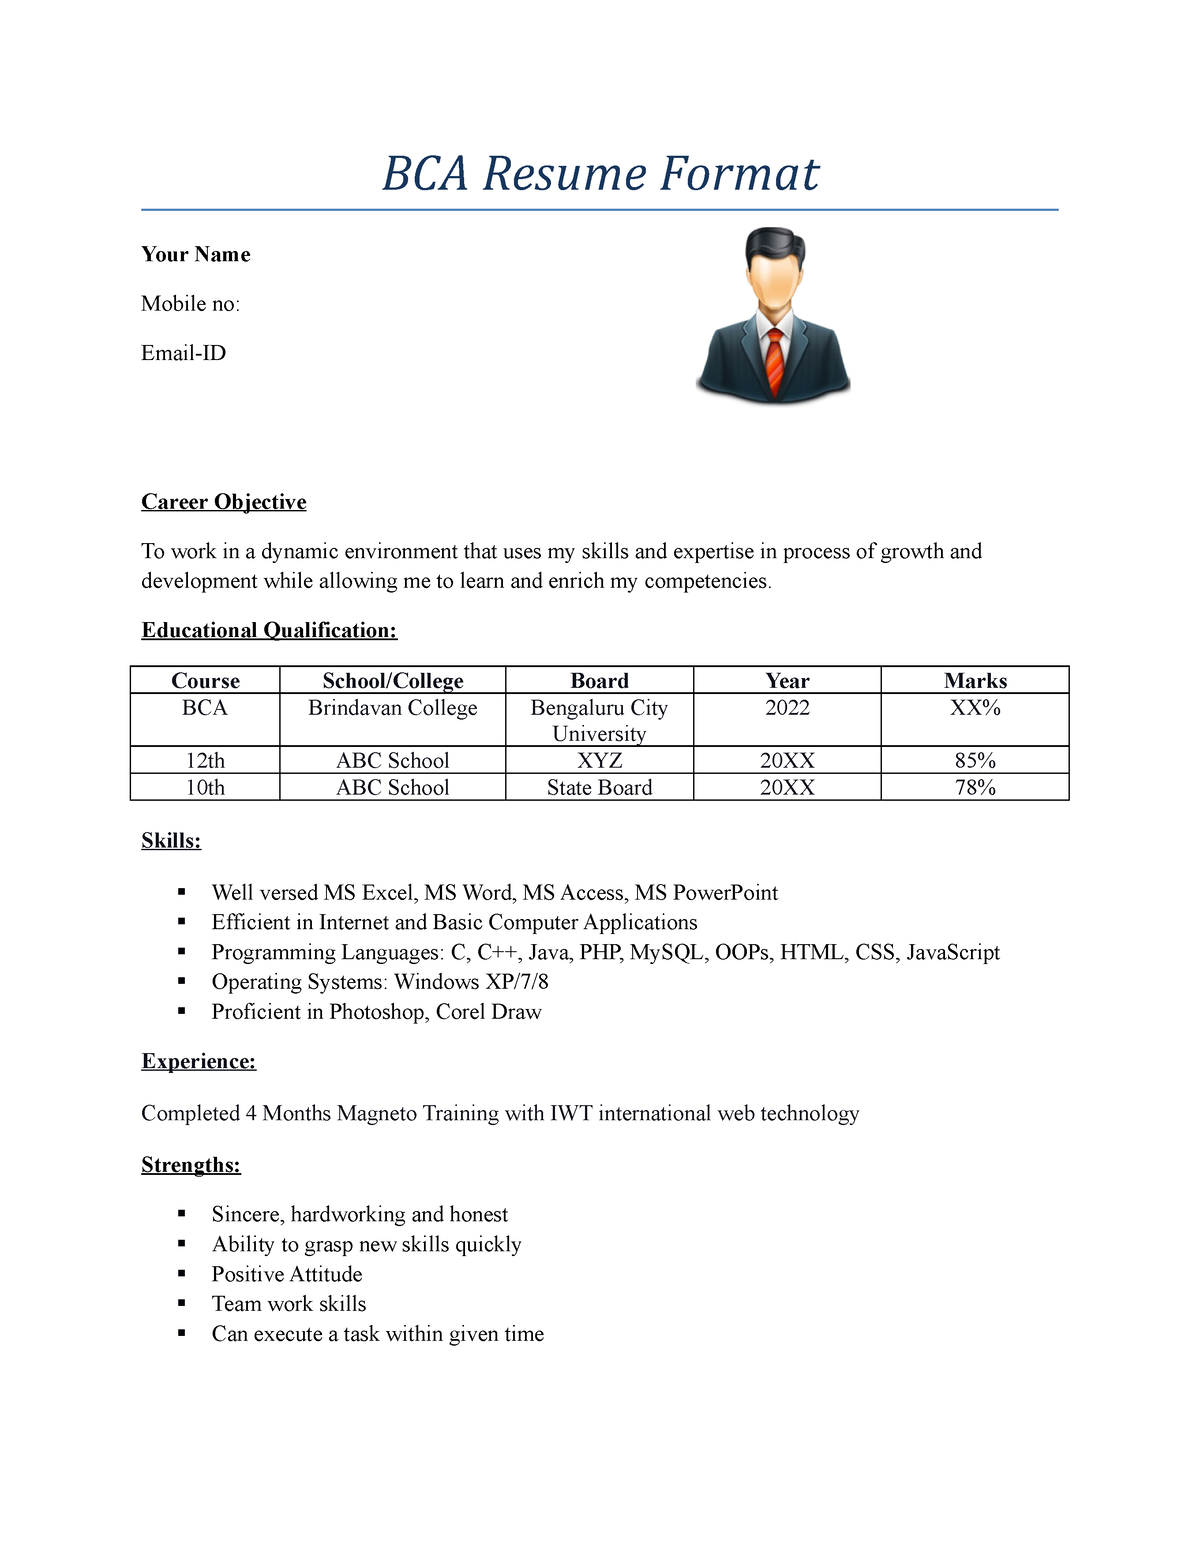 resume samples for bca freshers